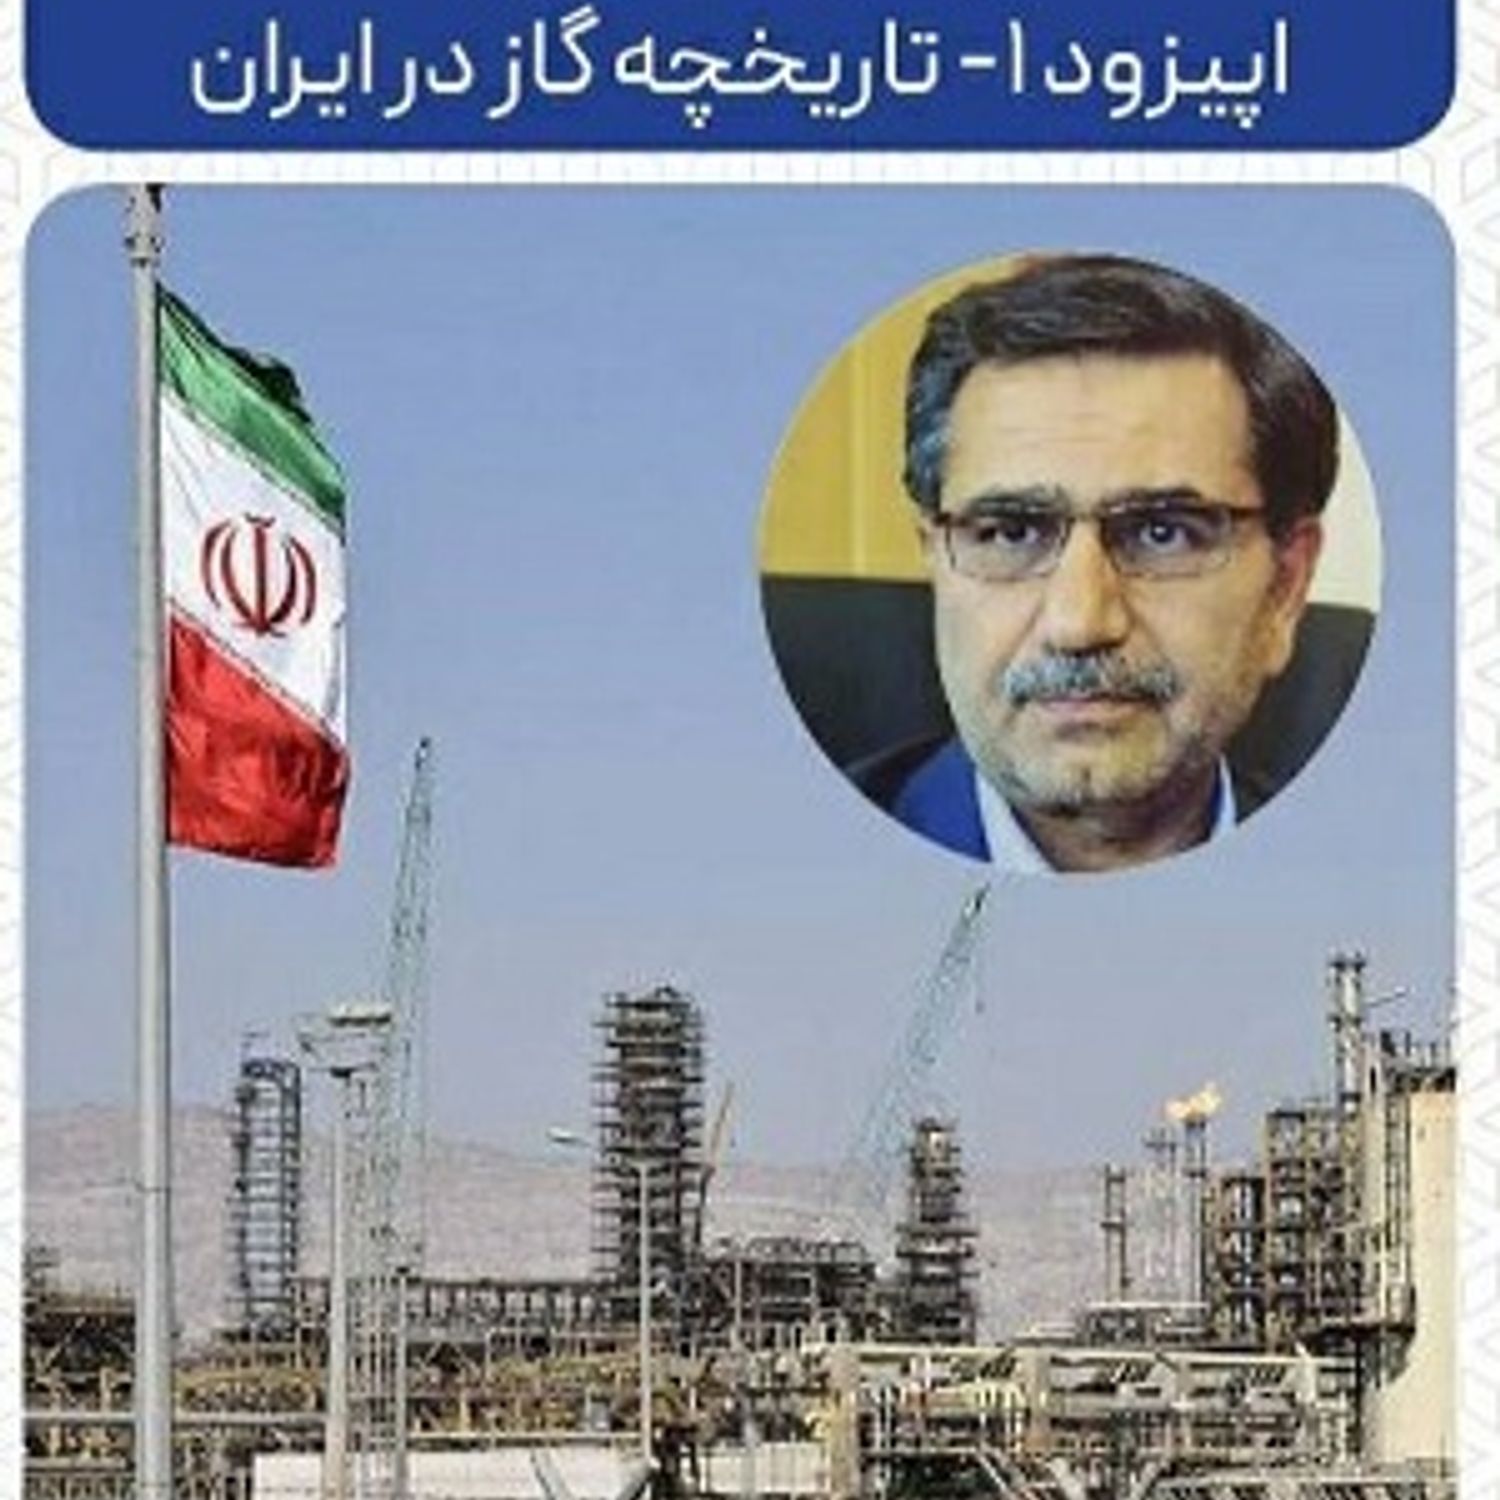 اپیزود ۱ - تاریخچه گاز در ایران